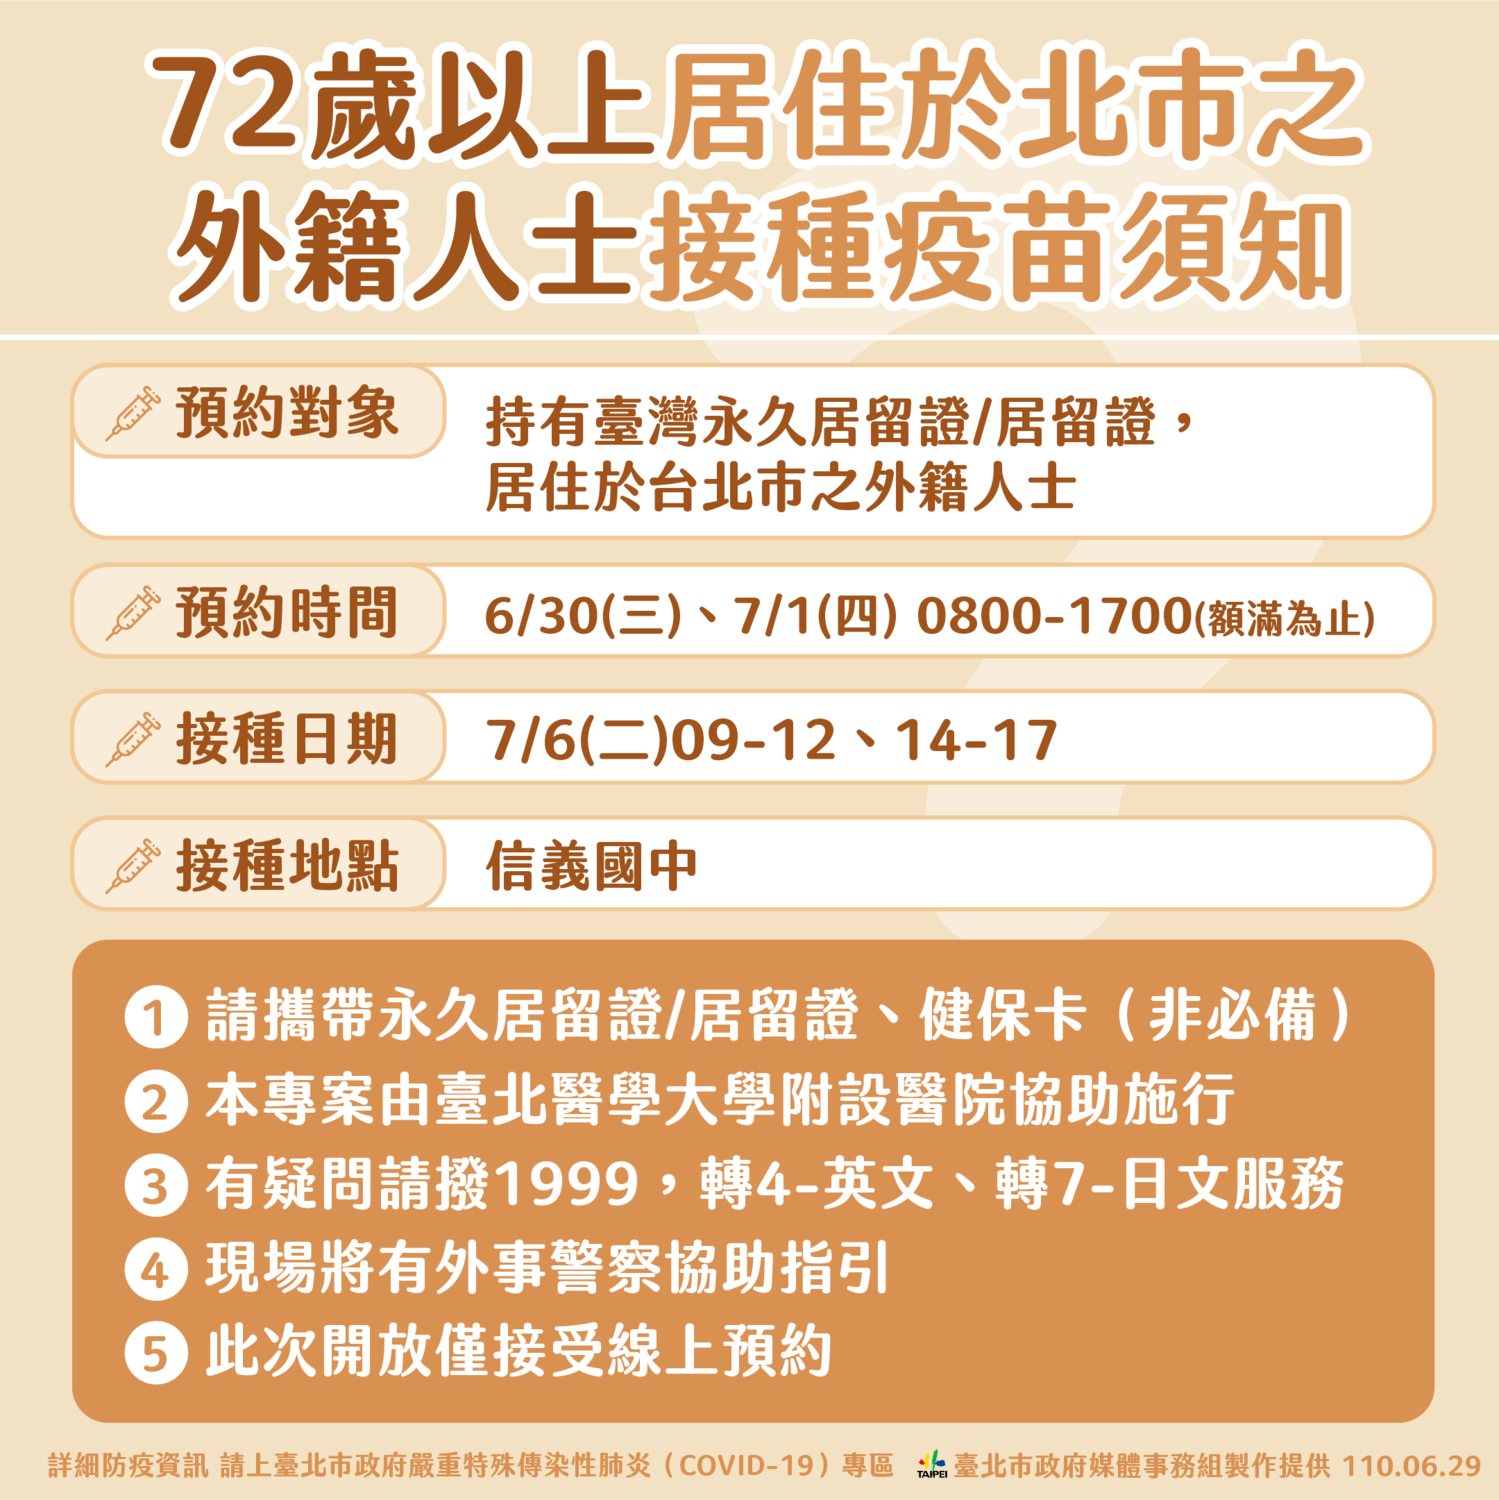 Những người cao tuổi từ 72 tuổi trở lên không phải là người Đài Loan nhưng chỉ cần có thẻ cư trú hợp pháp tại Đài Loan thì có thể vào trang web của bệnh viện trực thuộc Đại học Y khoa Đài Bắc (台北醫學大學附設醫院網站), để đặt lịch hẹn tiêm phòng, thời gian đặt lịch hẹn là ngày 30/6 và 1/7. 